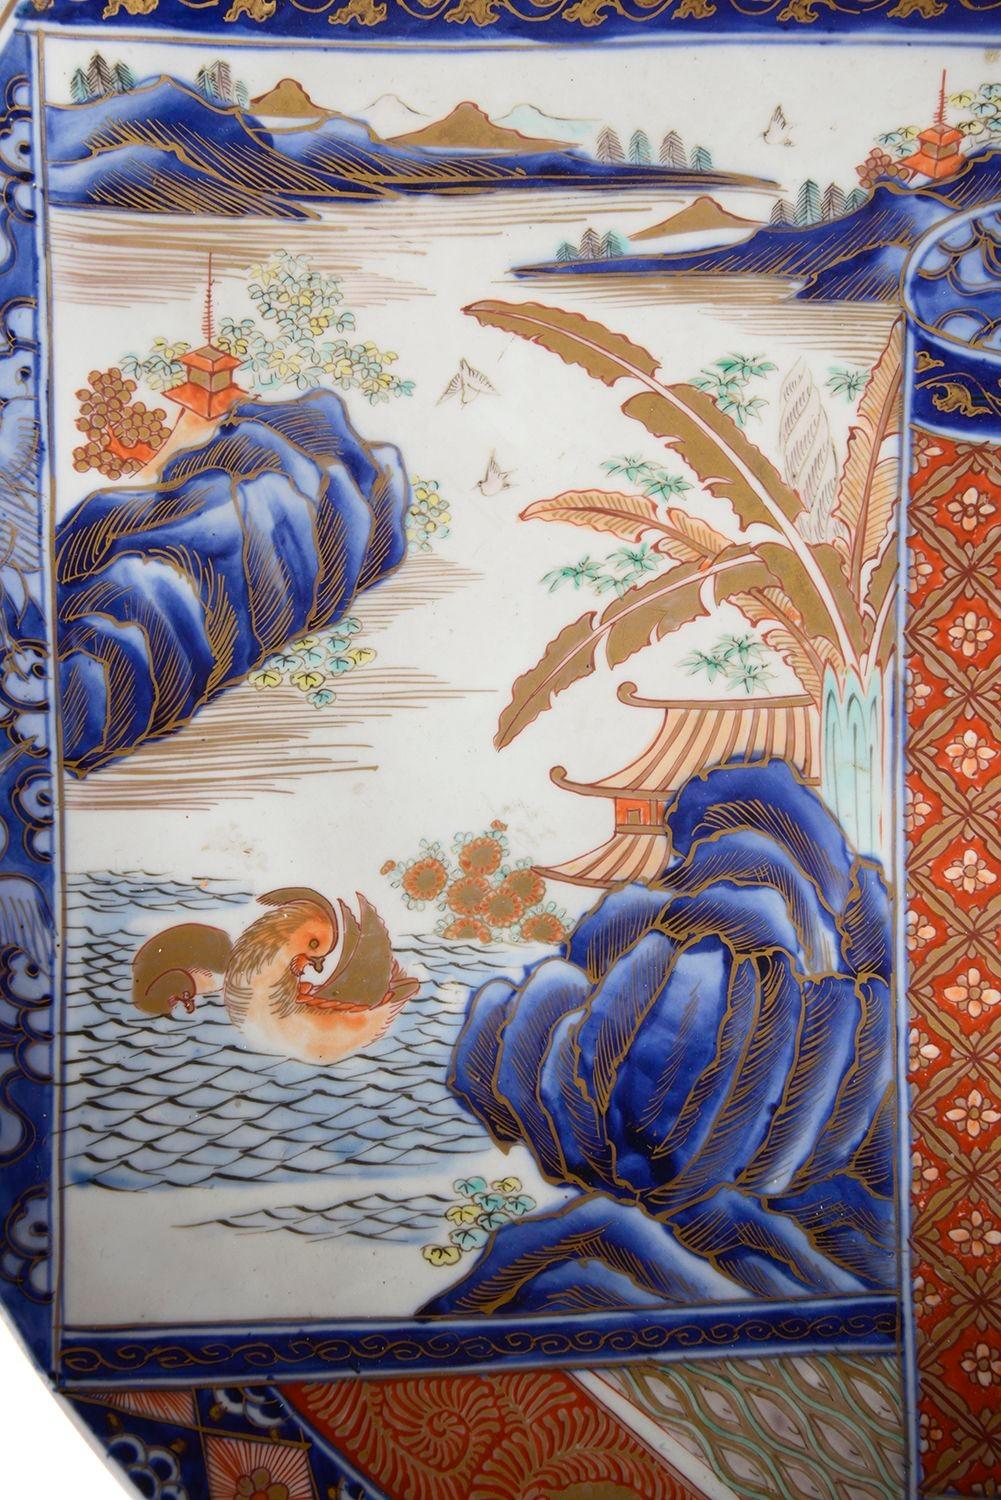 Chargeur en porcelaine japonaise Imari de très bonne qualité datant de la fin du XIXe siècle, présentant un décor de motifs classiques sur le bord, de magnifiques couleurs orange et bleues, une scène peinte à la main représentant un rouleau japonais